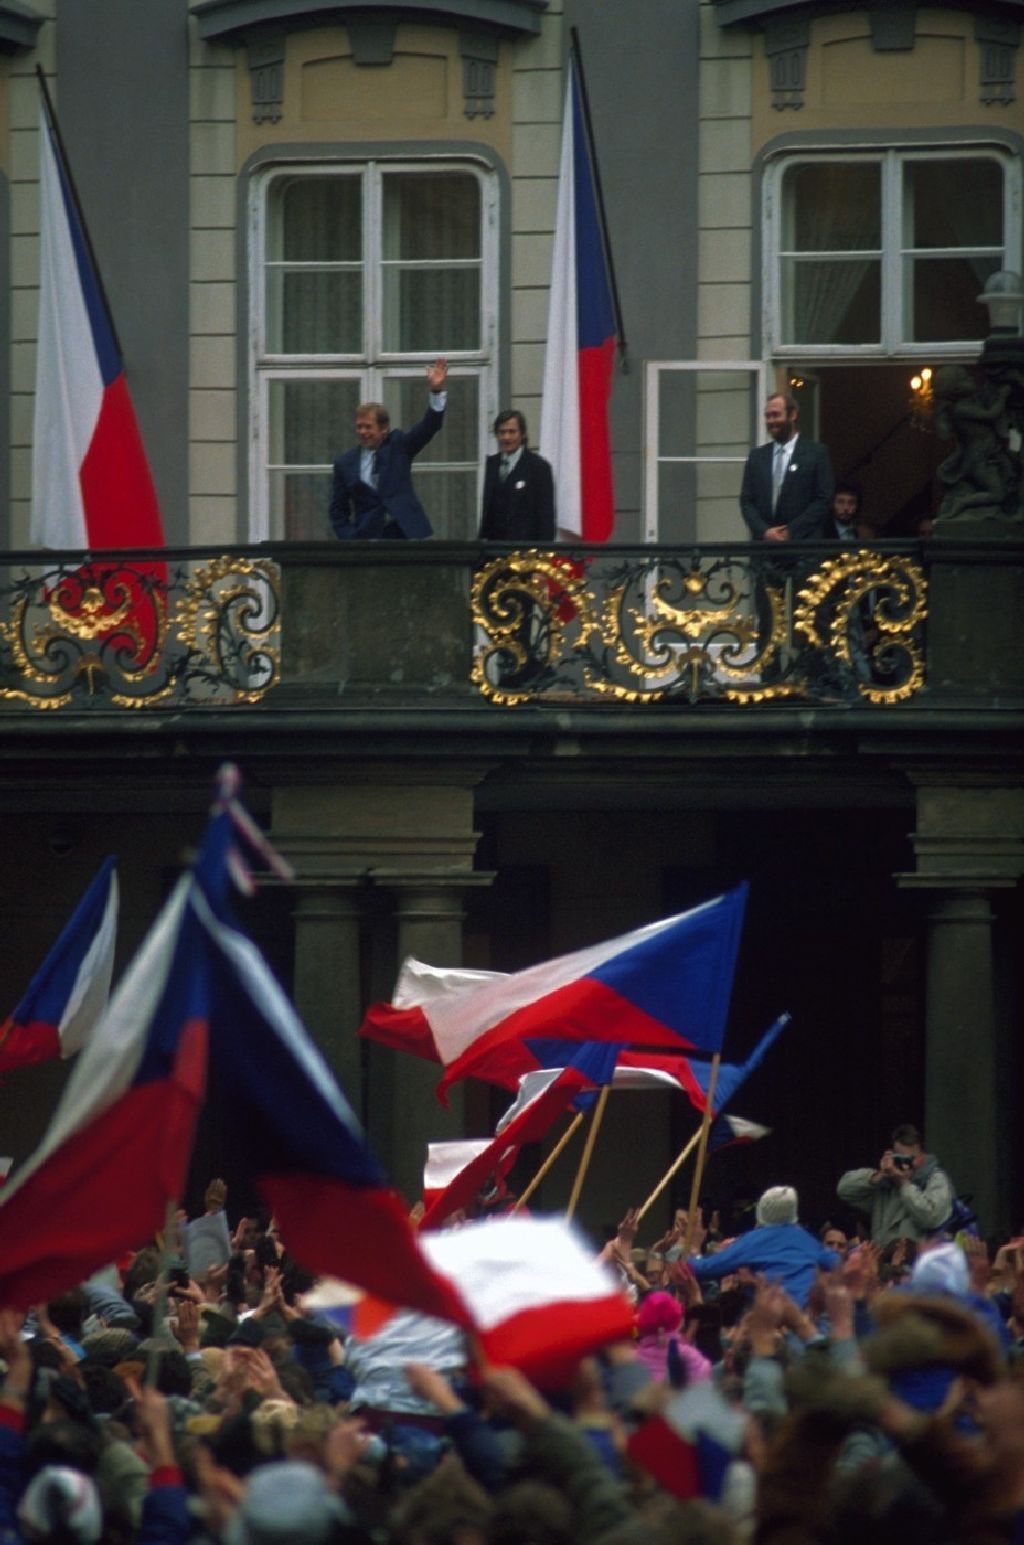 Václav Havel - 1989